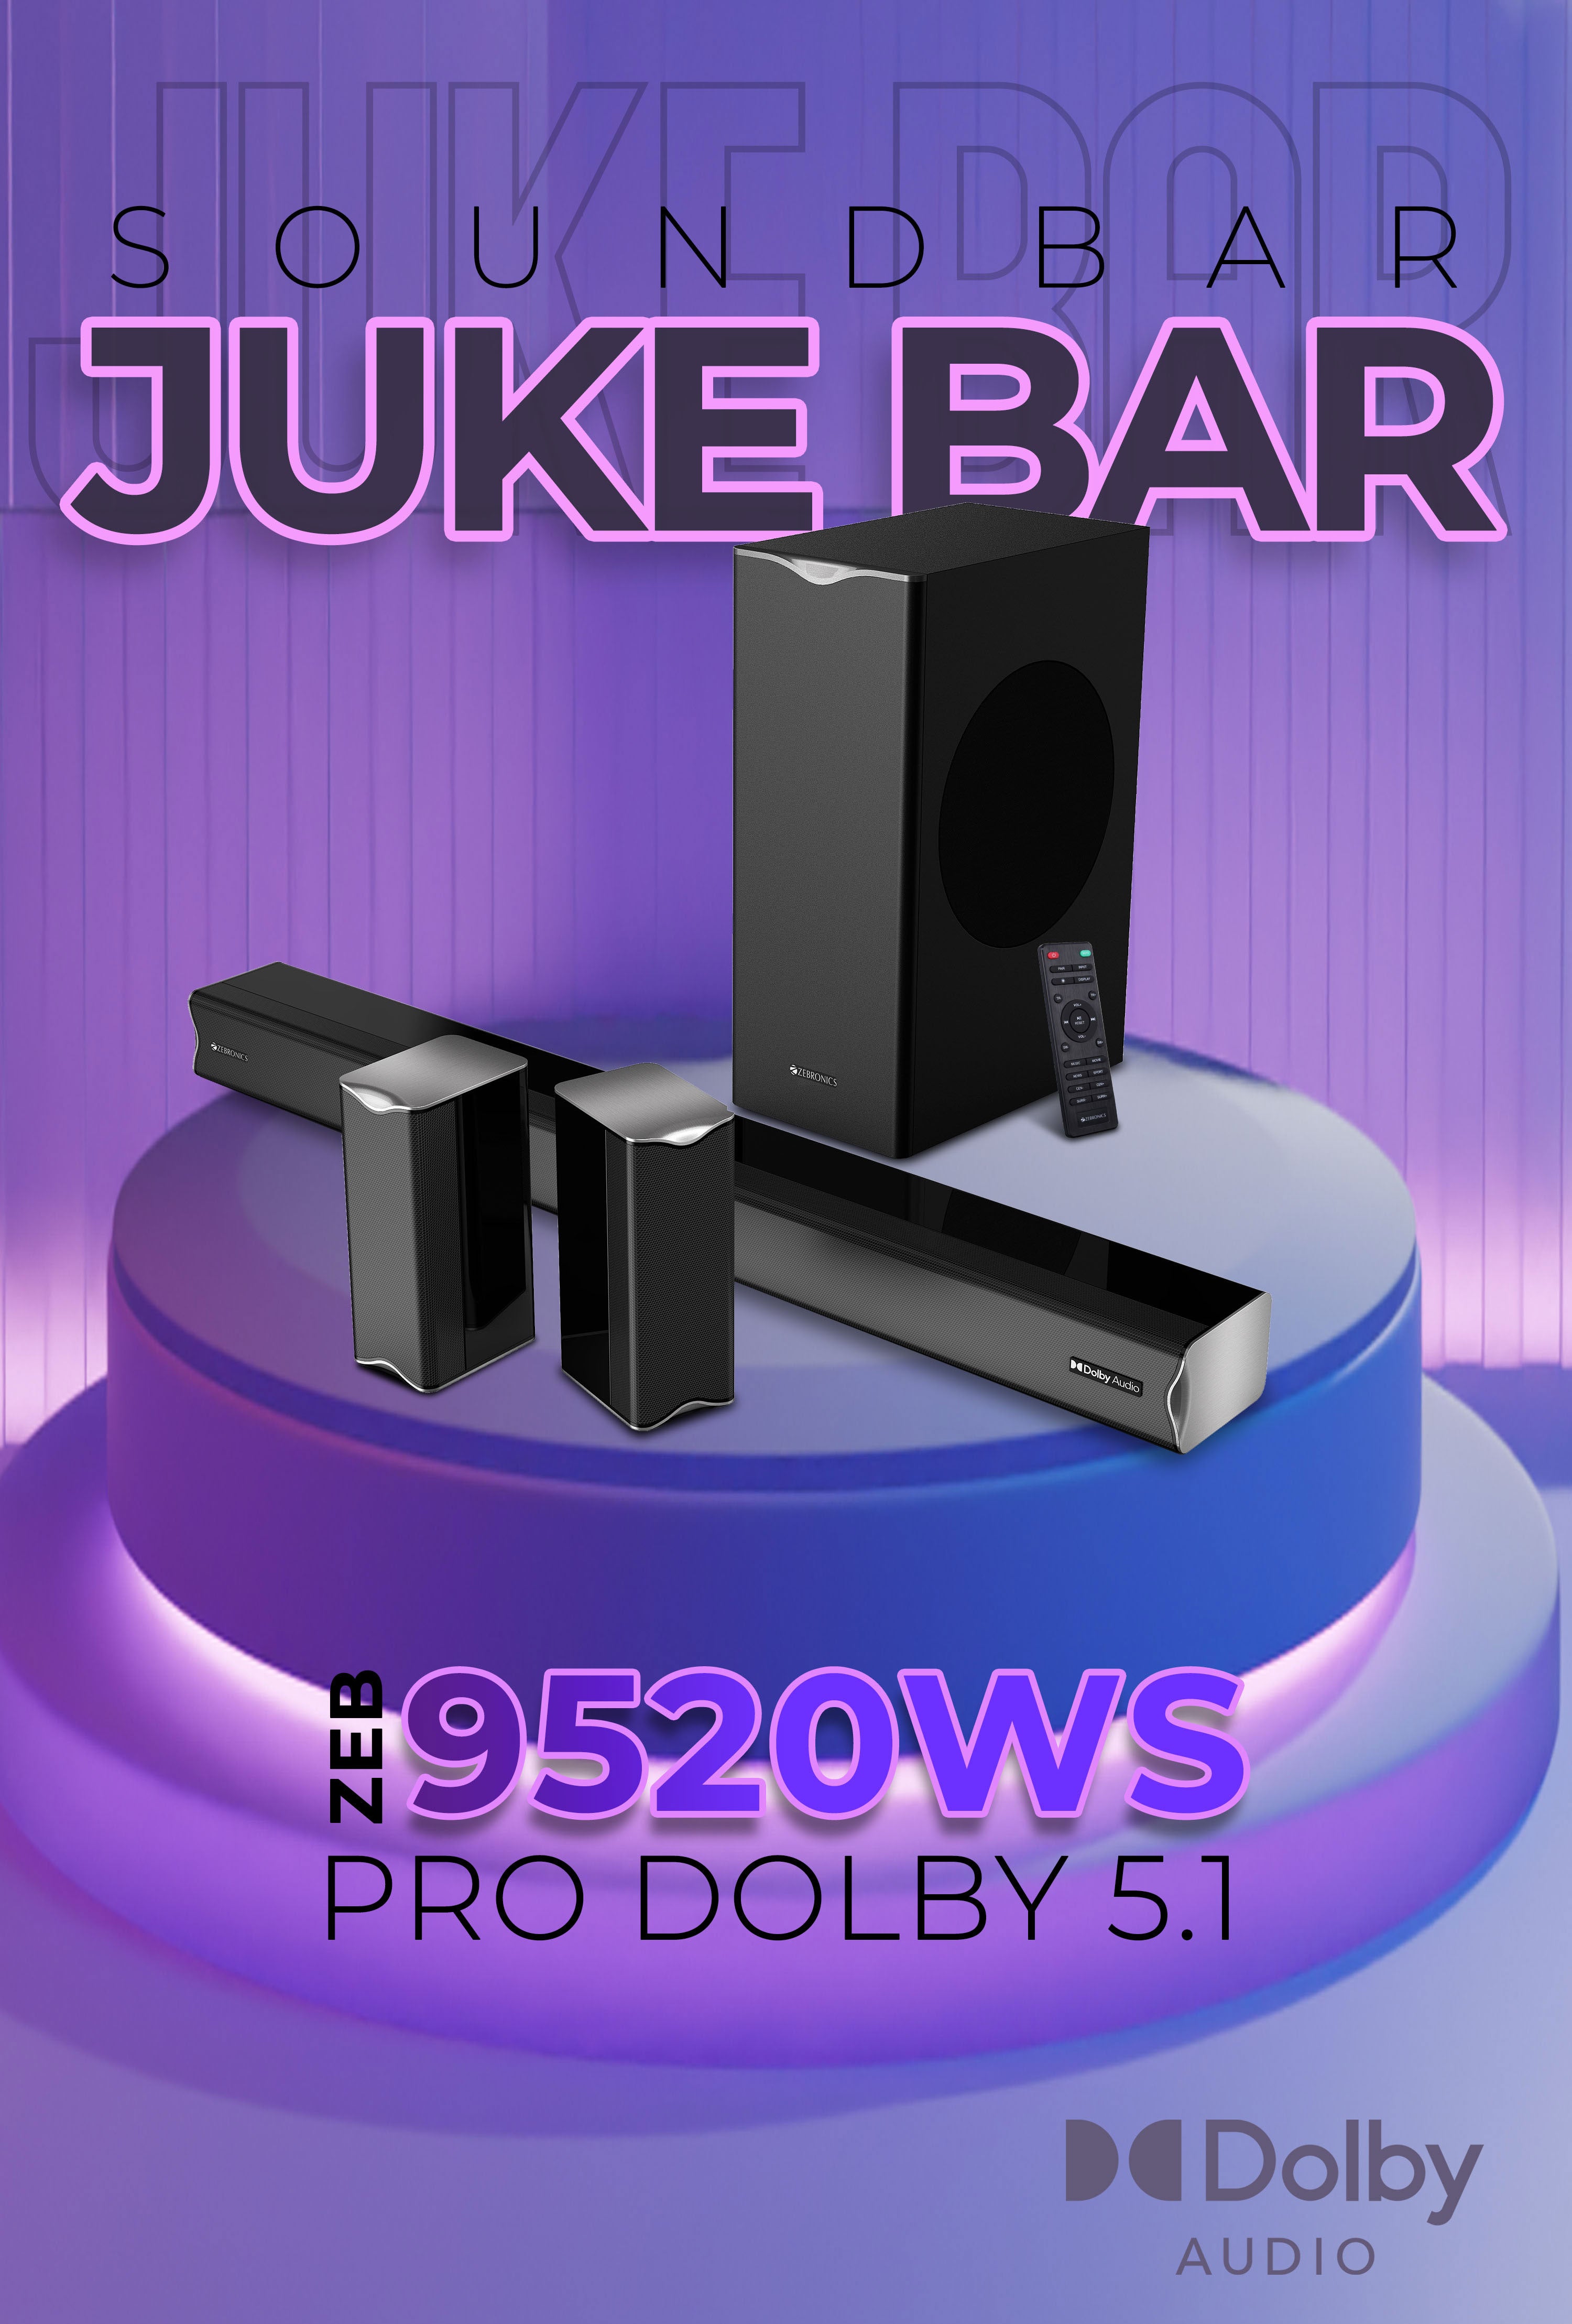 Zeb-Juke Bar 9520WS-1